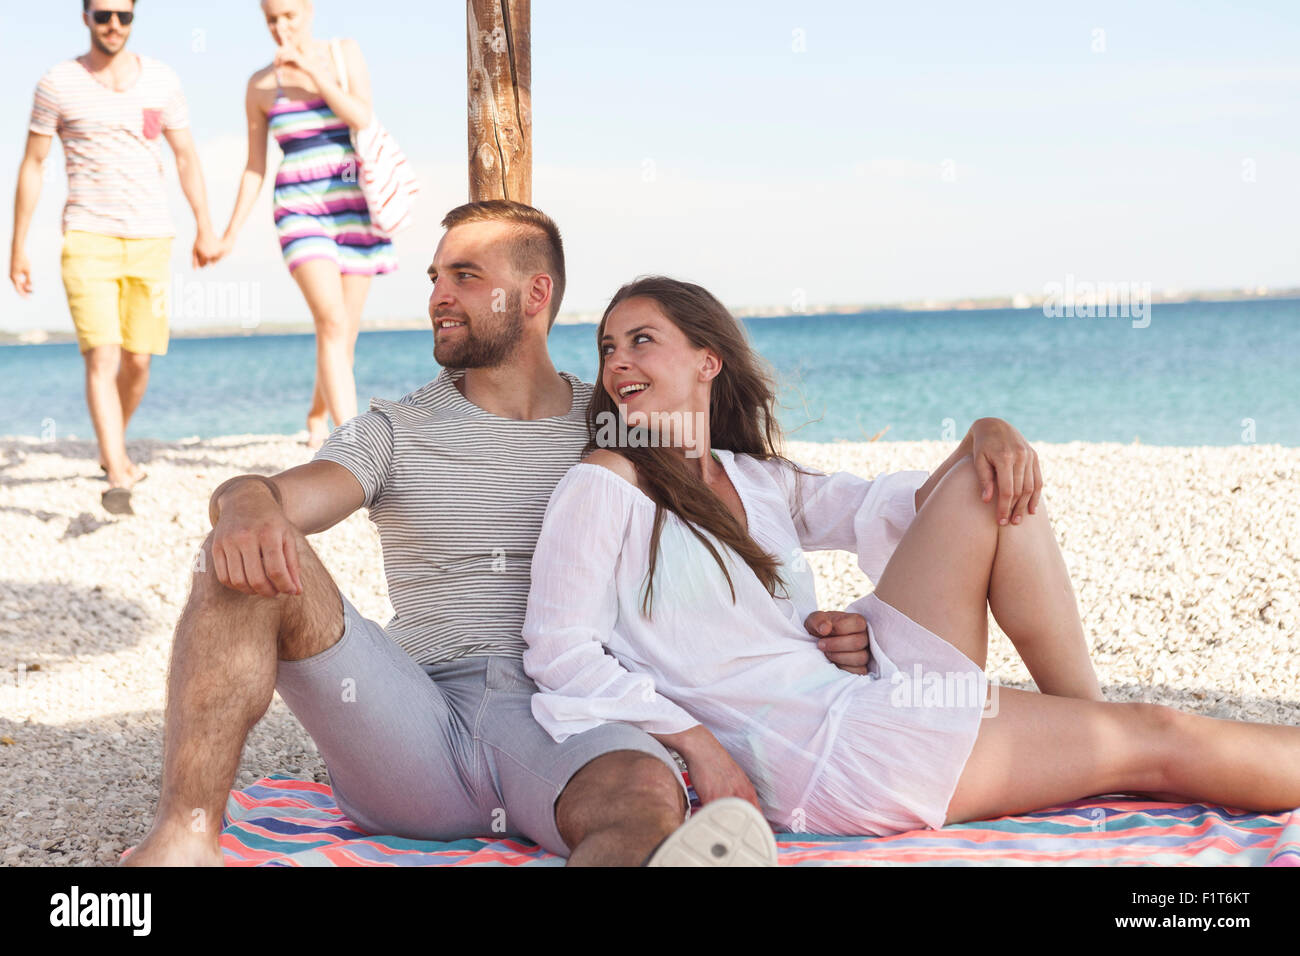 Young couple relaxes under beach umbrella Stock Photo